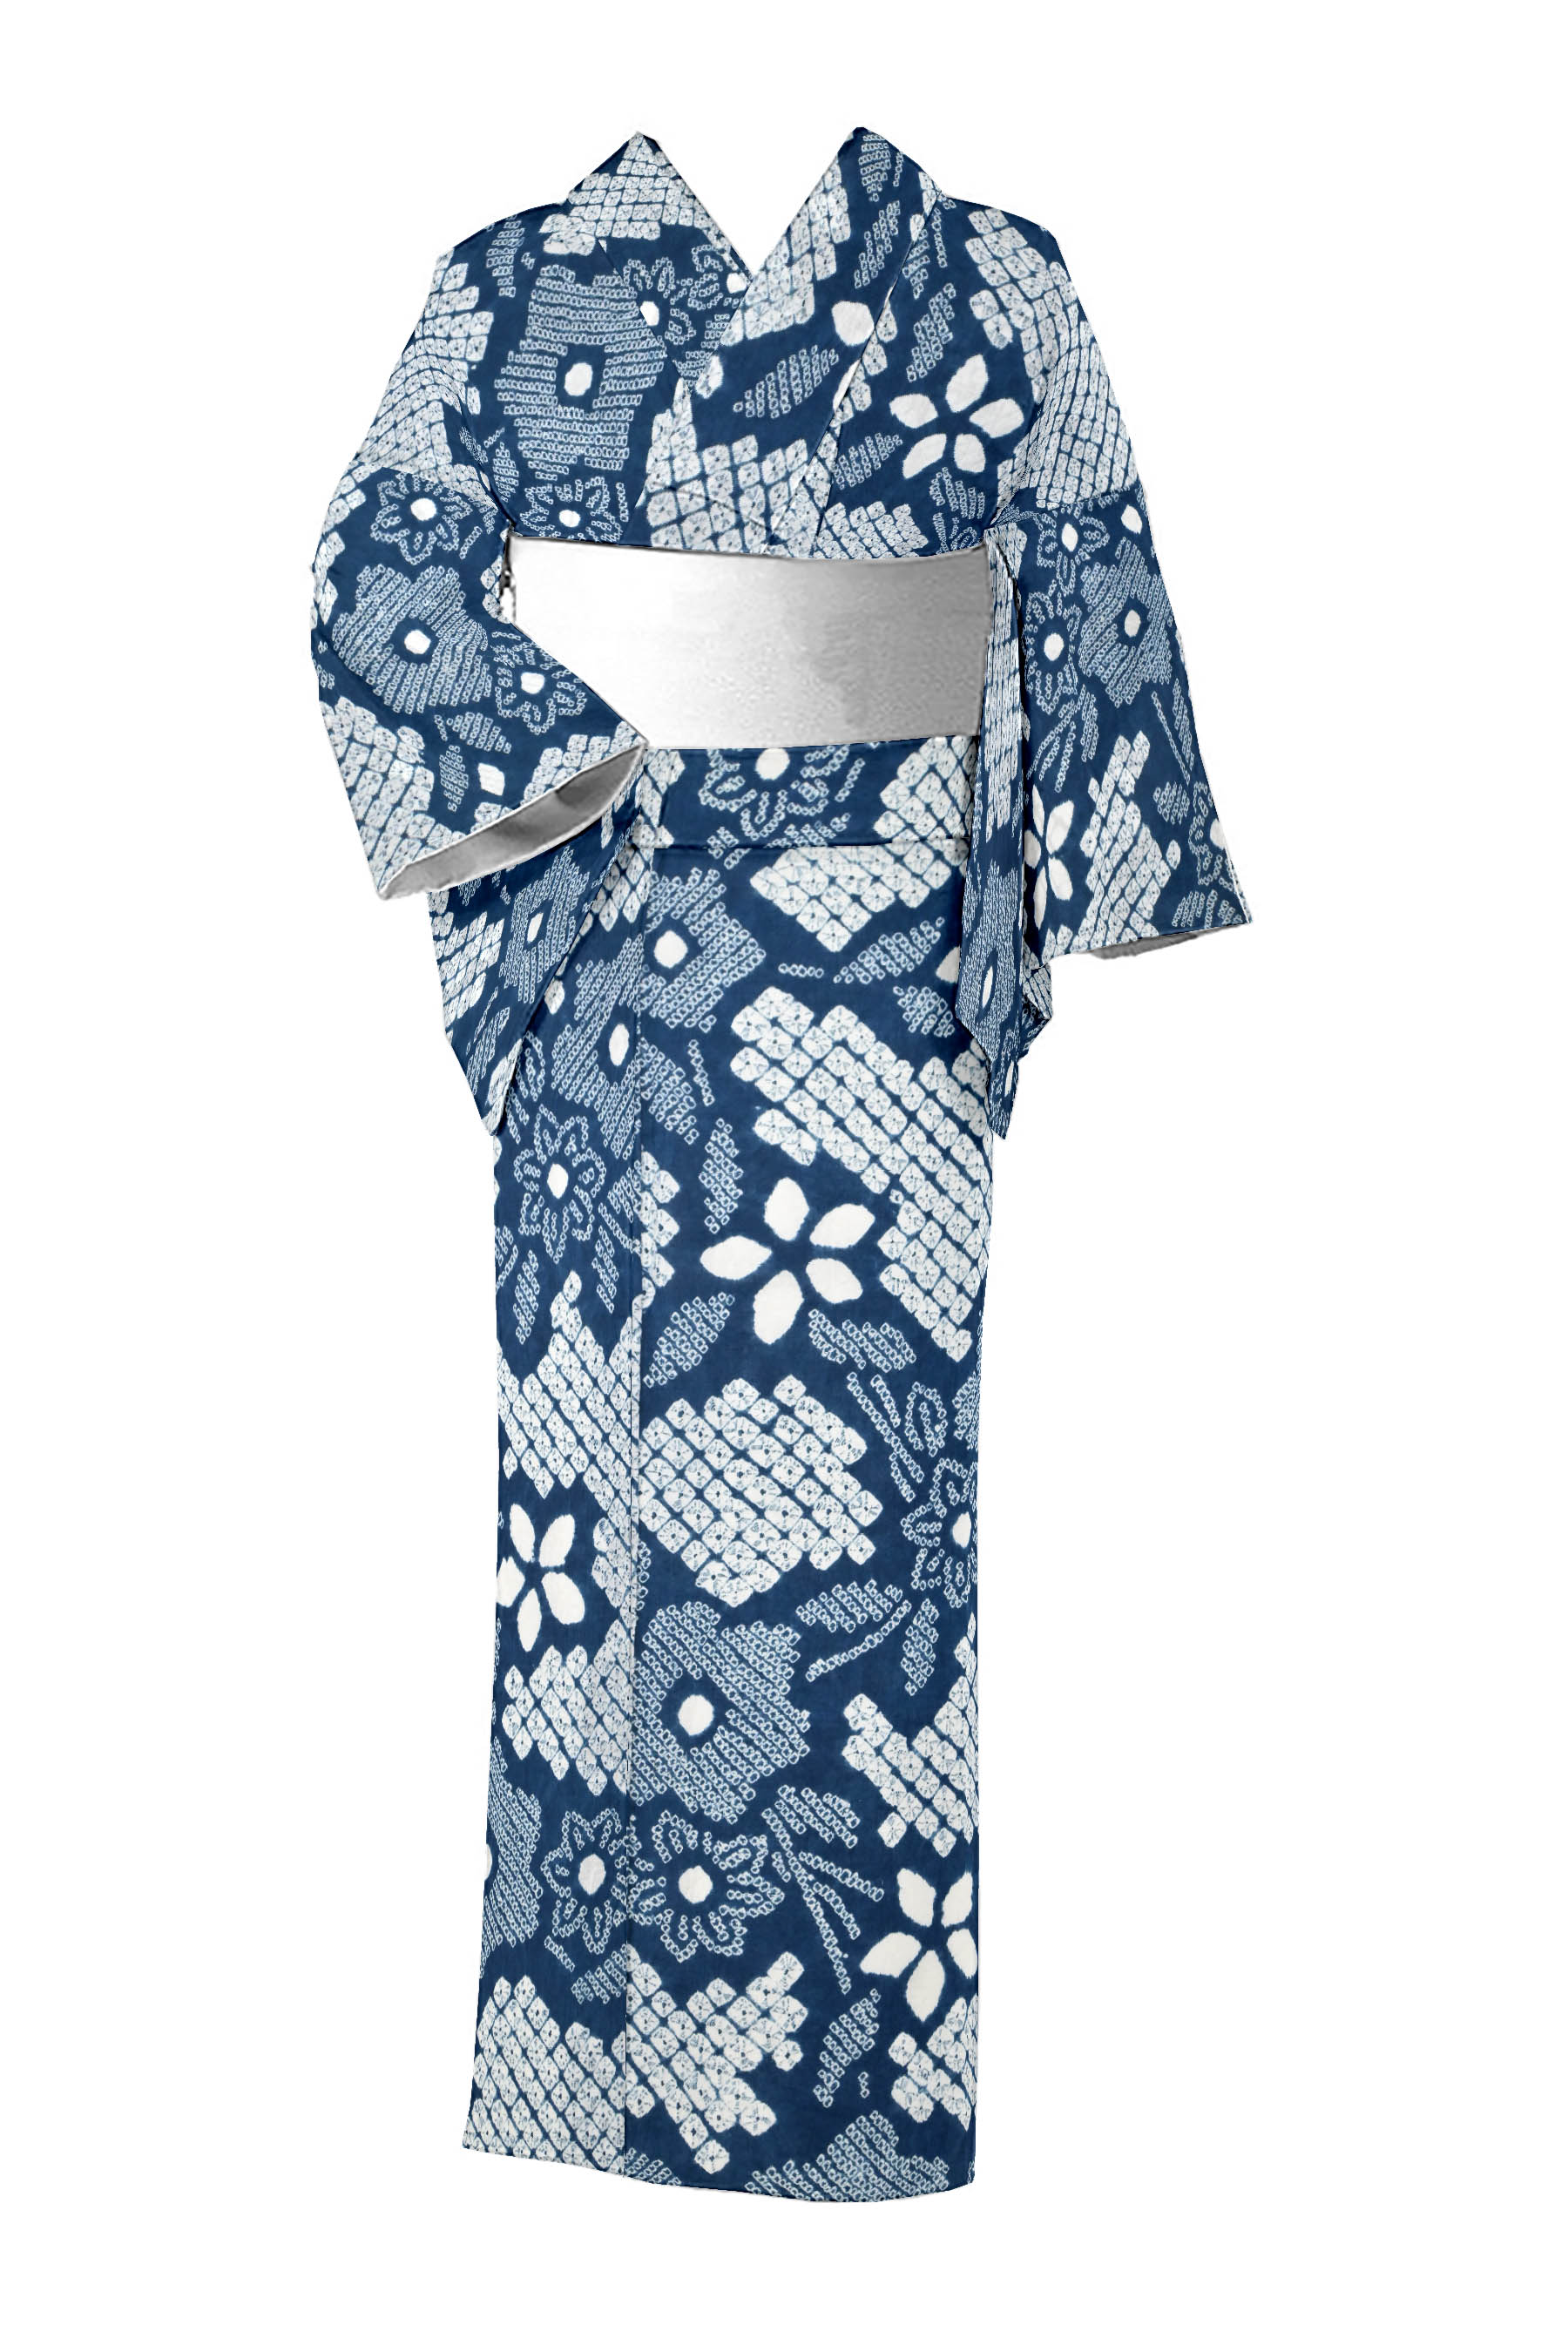 浴衣をお探しなら京都きもの市場【日本最大級の着物通販サイト】